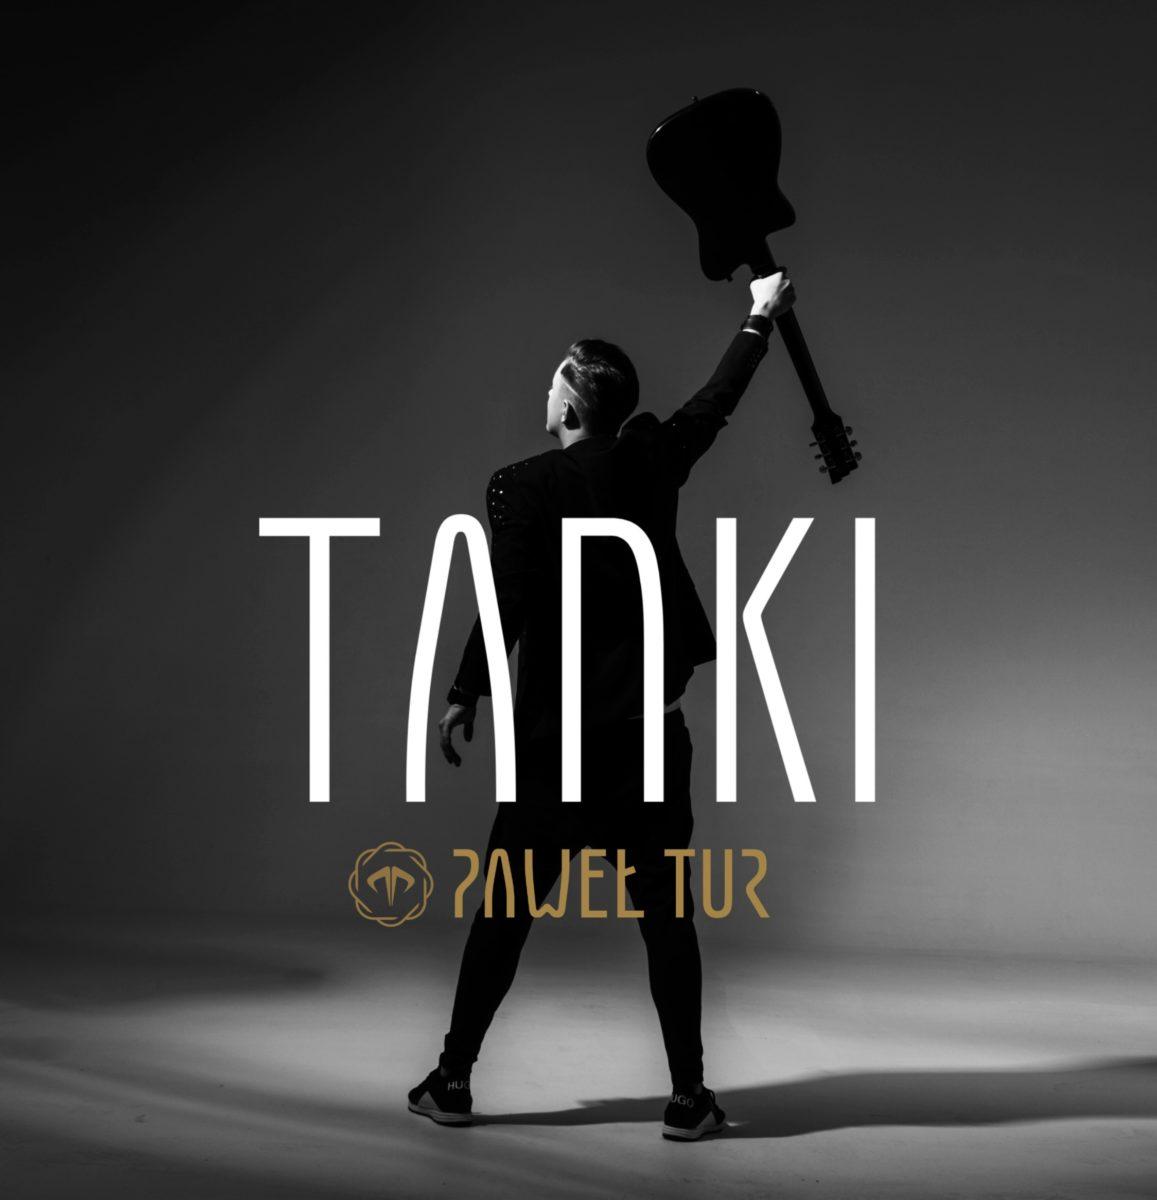 Tanki – pierwszy singiel Pawła Tura zapowiadający jego solowy album